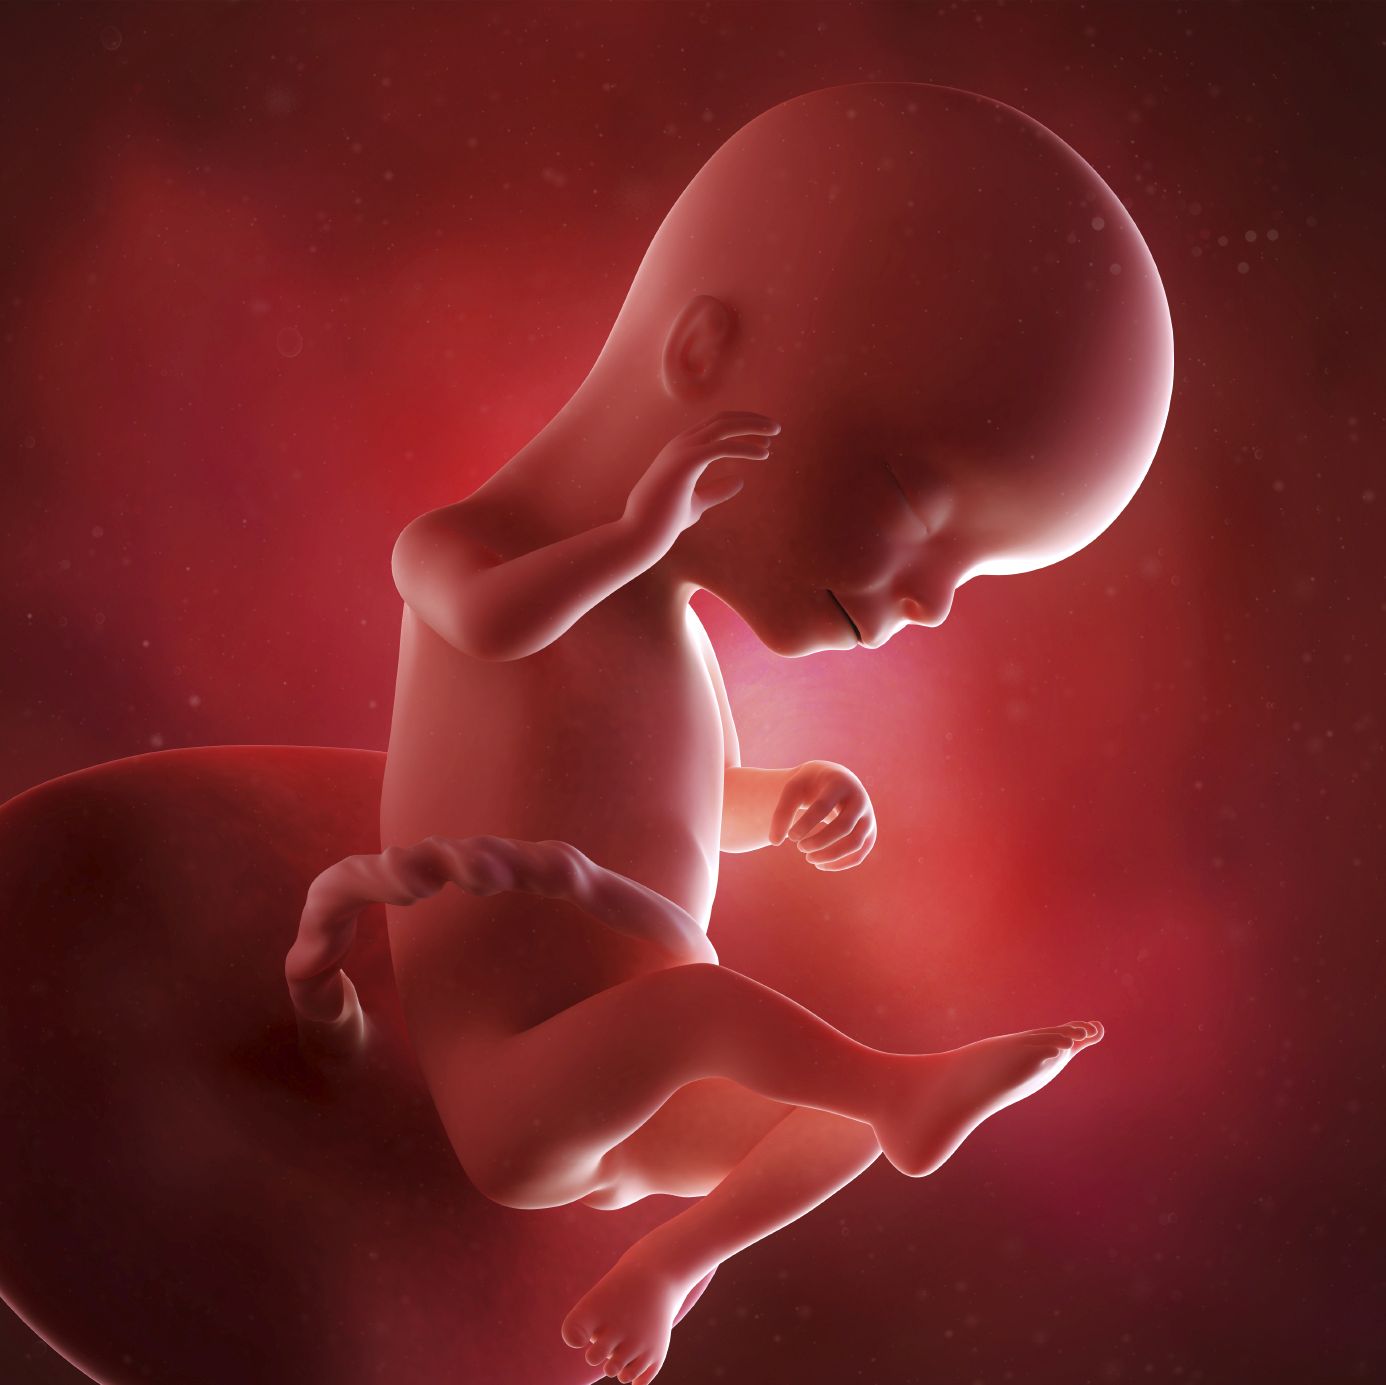 fetus 16 weeks